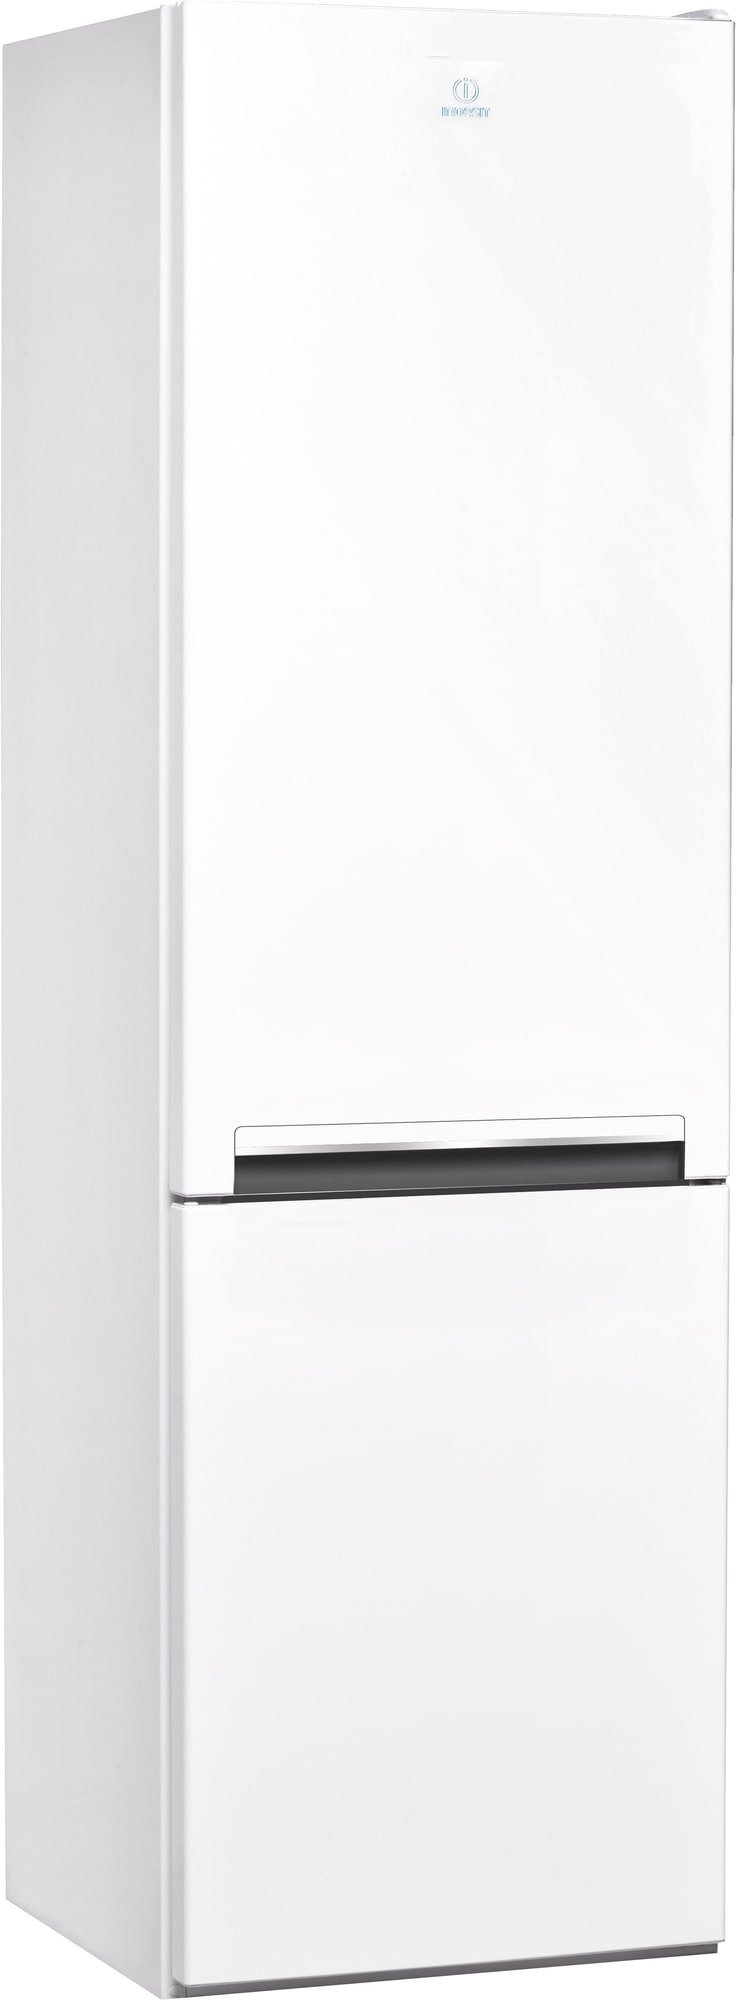 Billede af Indesit køleskab/fryser LI7S1EW (hvid)